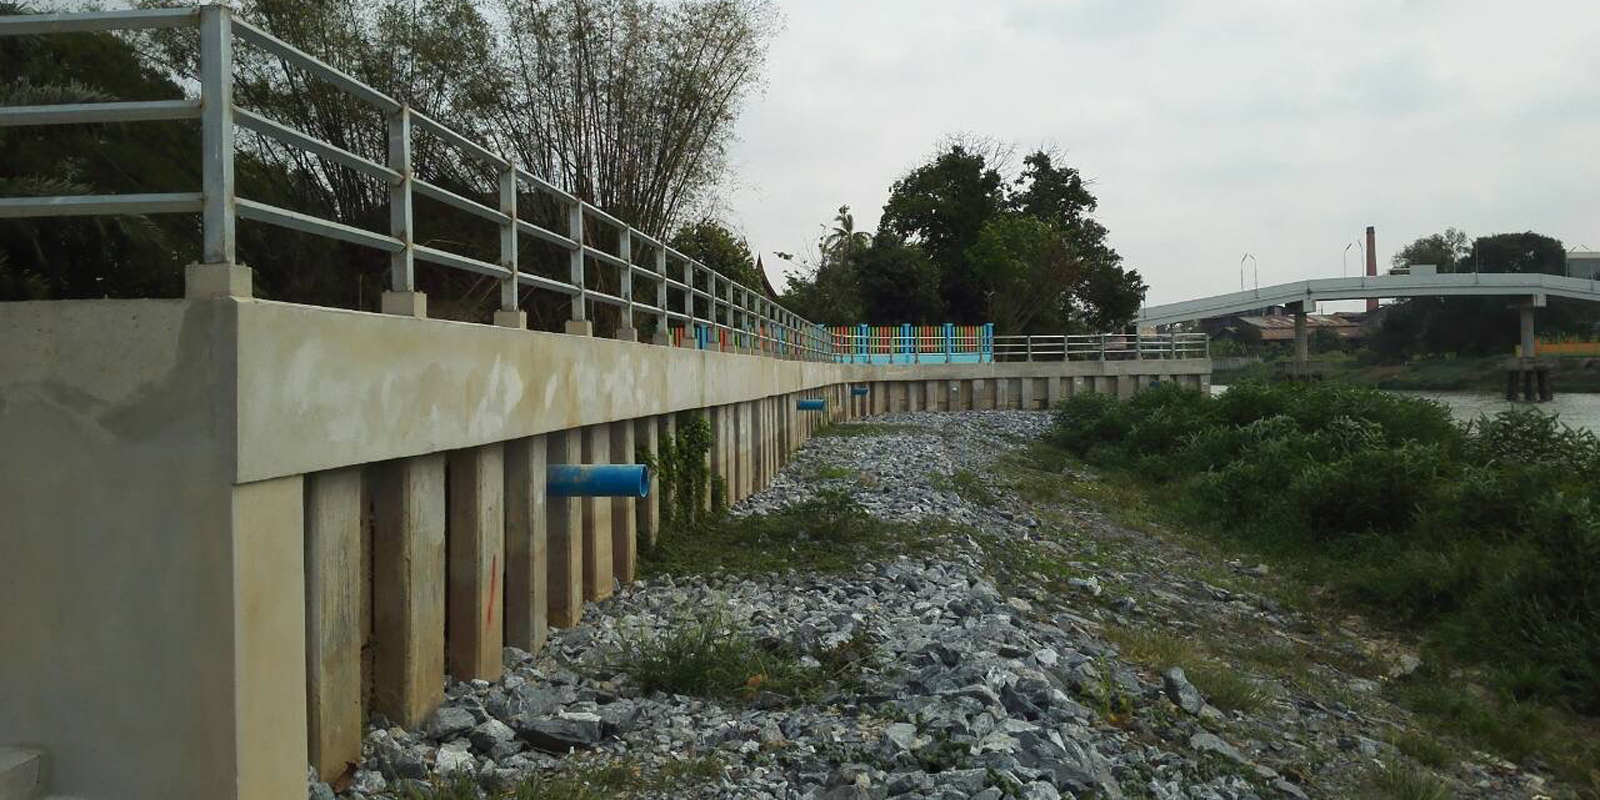 โครงการเขื่อนป้องกันตลิ่งริมแม่น้ำท่าจีน ม.1 ต.บ้านกร่าง